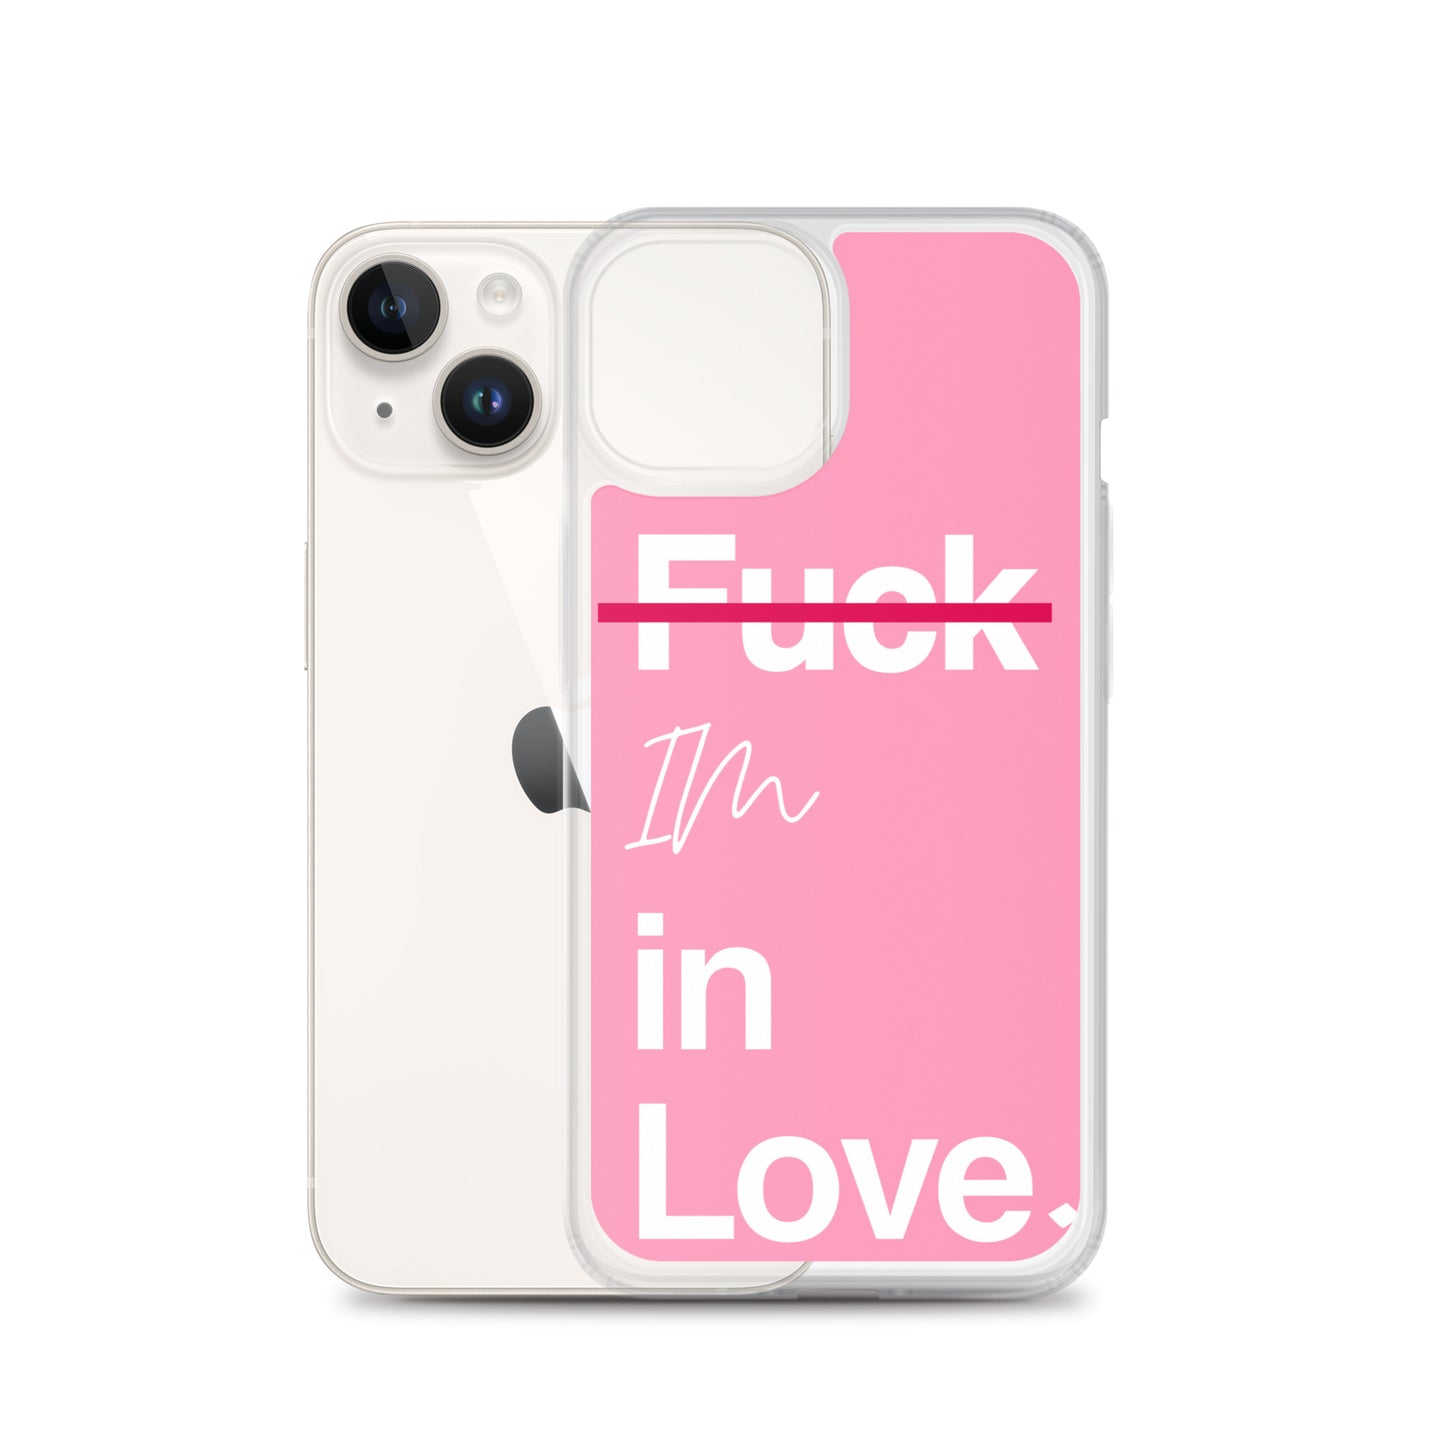 F*** Im in Love Phone Case